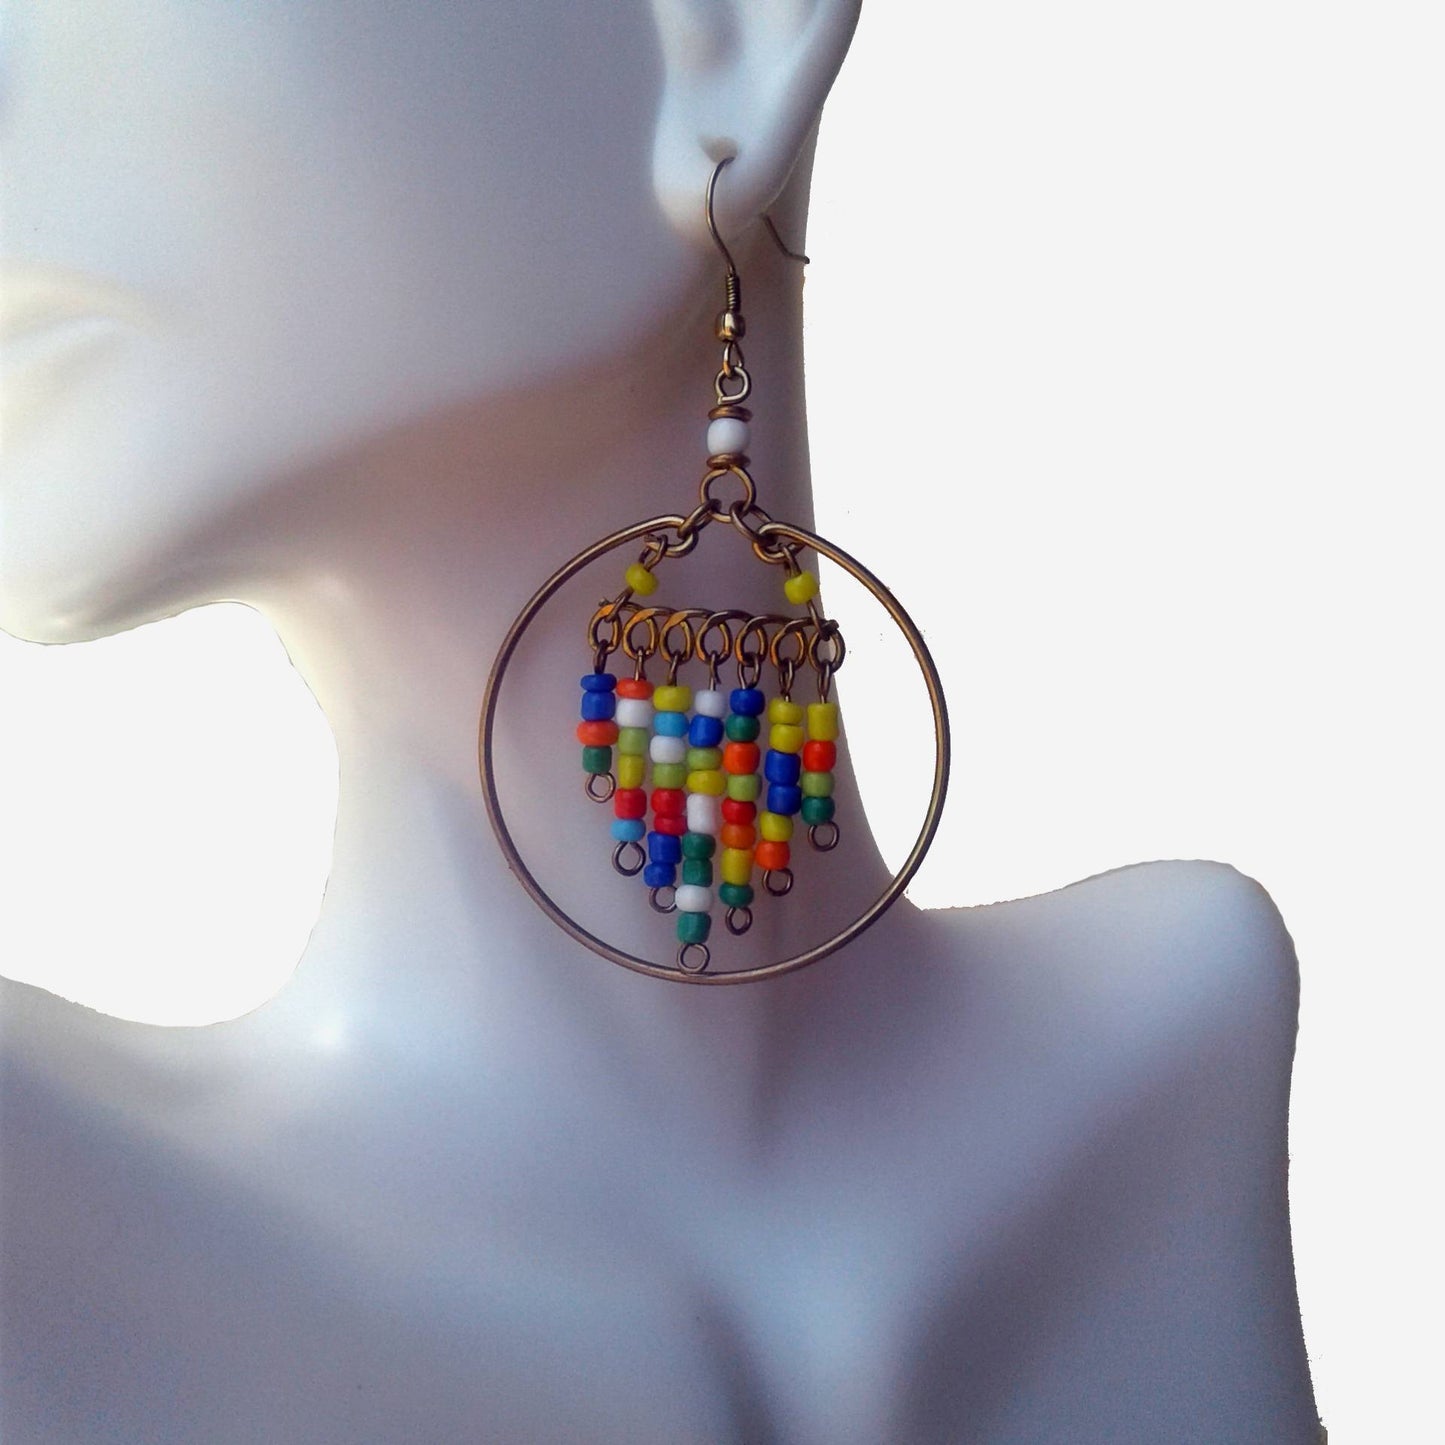 2 inch hoop earrings